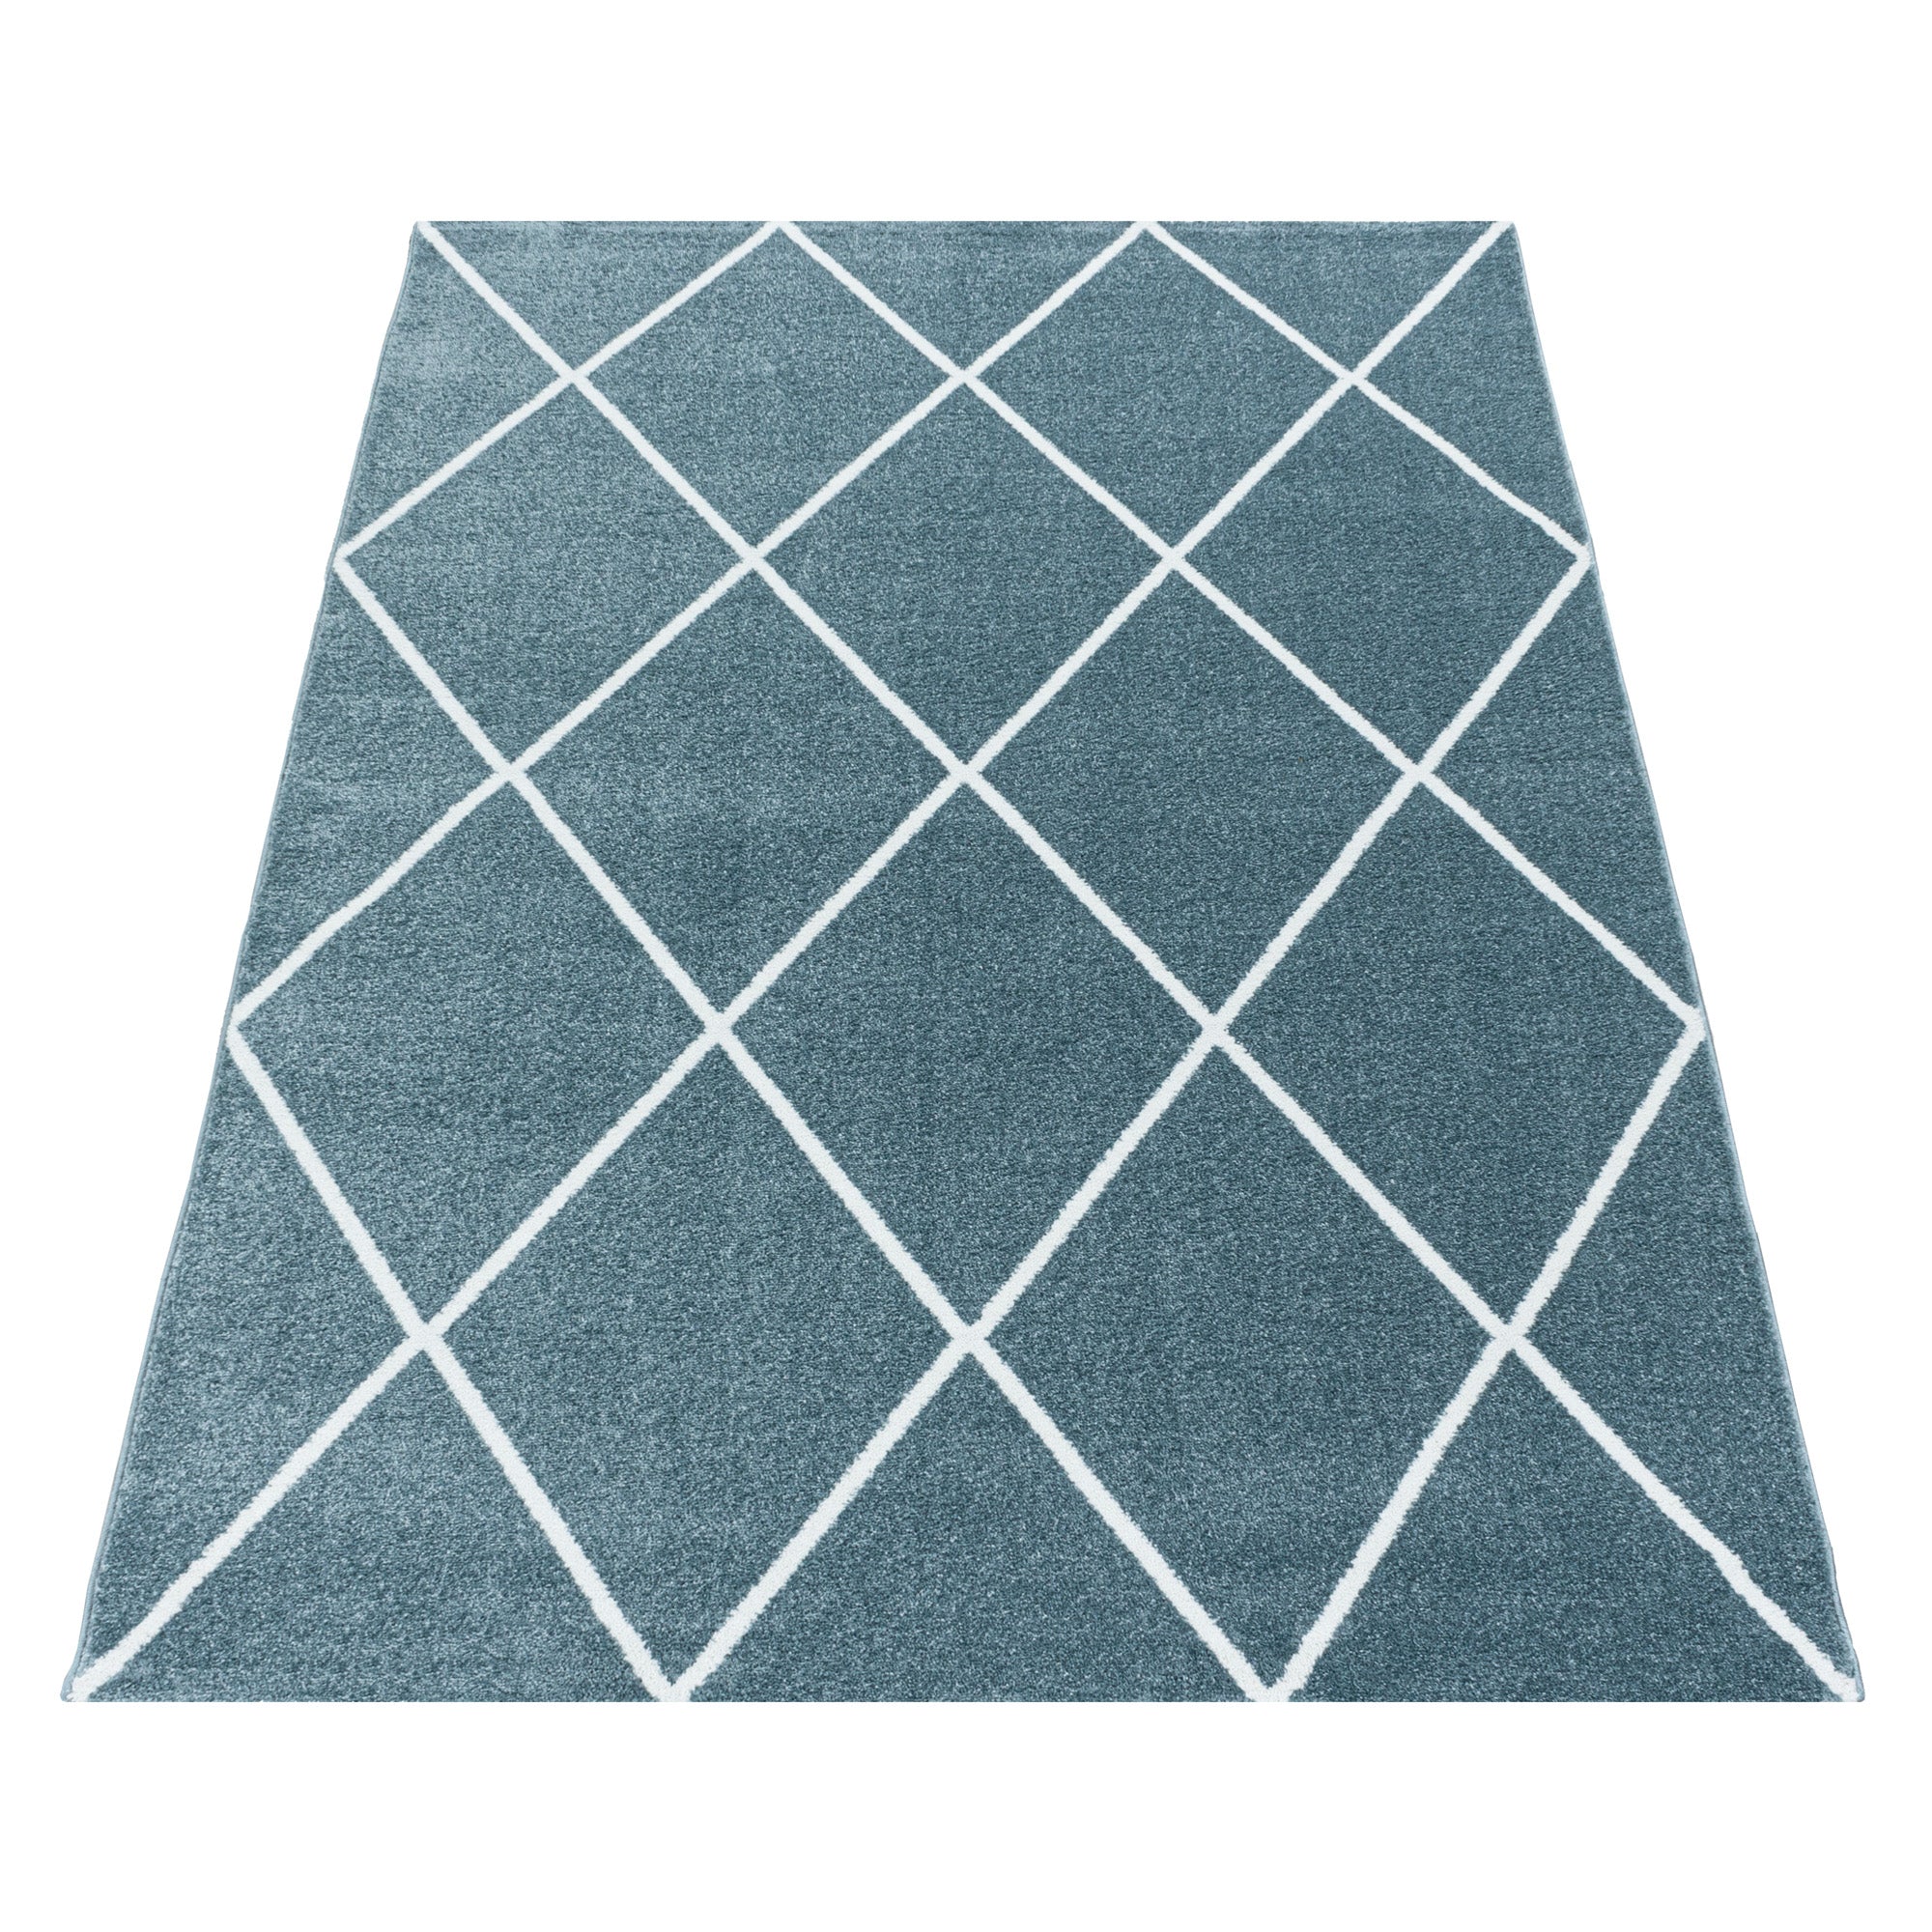 Kurzflor Teppich Blau Design Raute Modern Linien Wohnzimmerteppich Unifarben